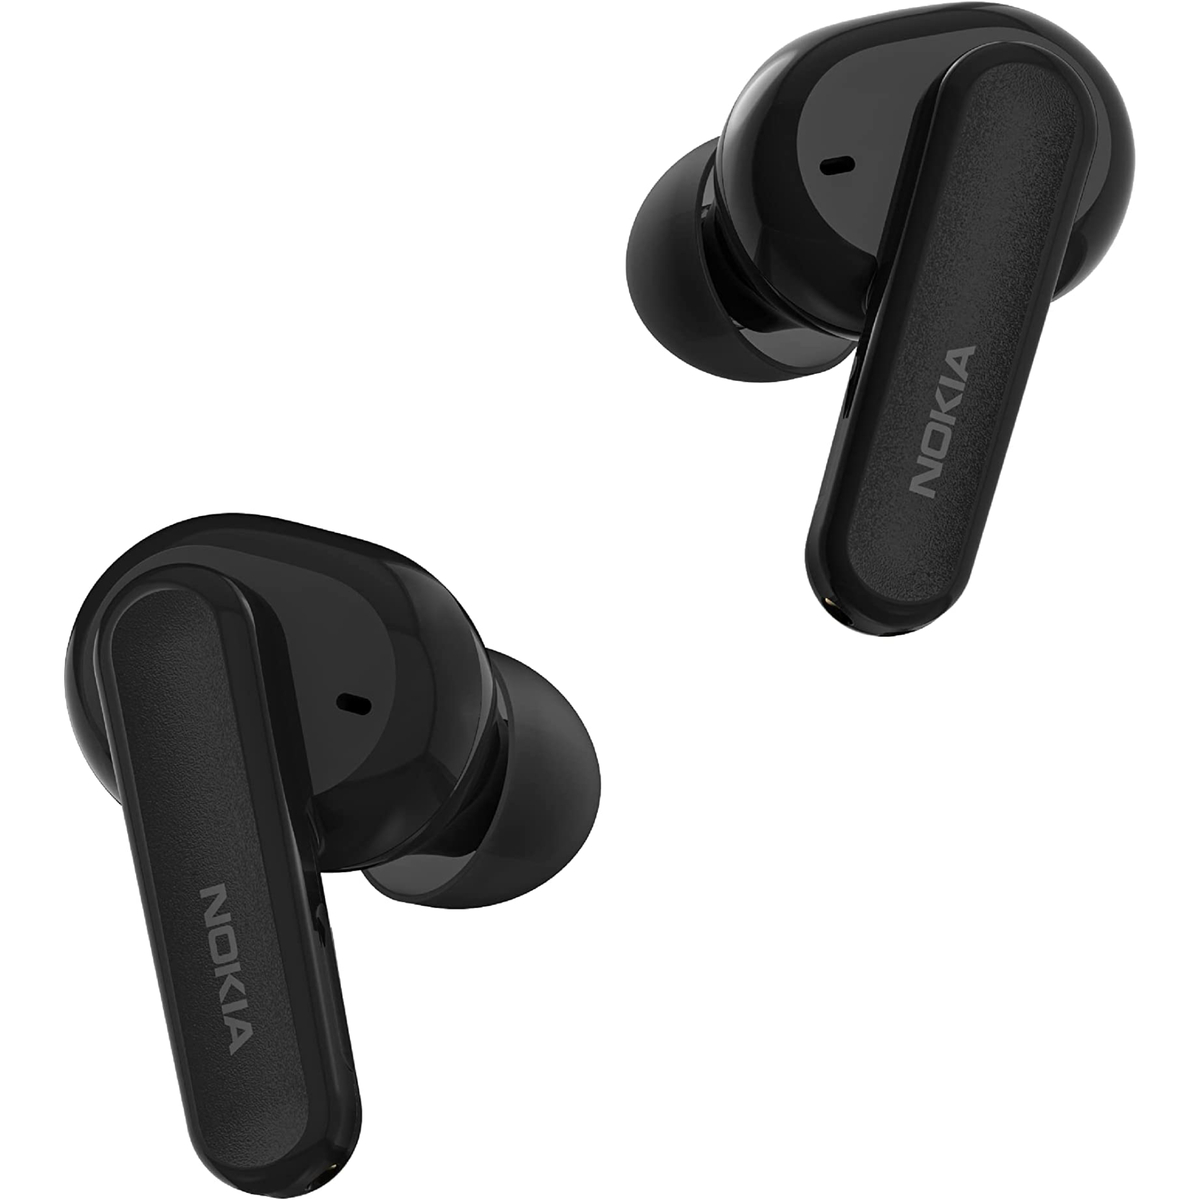 سماعات أذن Nokia Go In-Ear True اللاسلكية المانعة للضوضاء Earbuds2 Pro، أسود، TWS-222